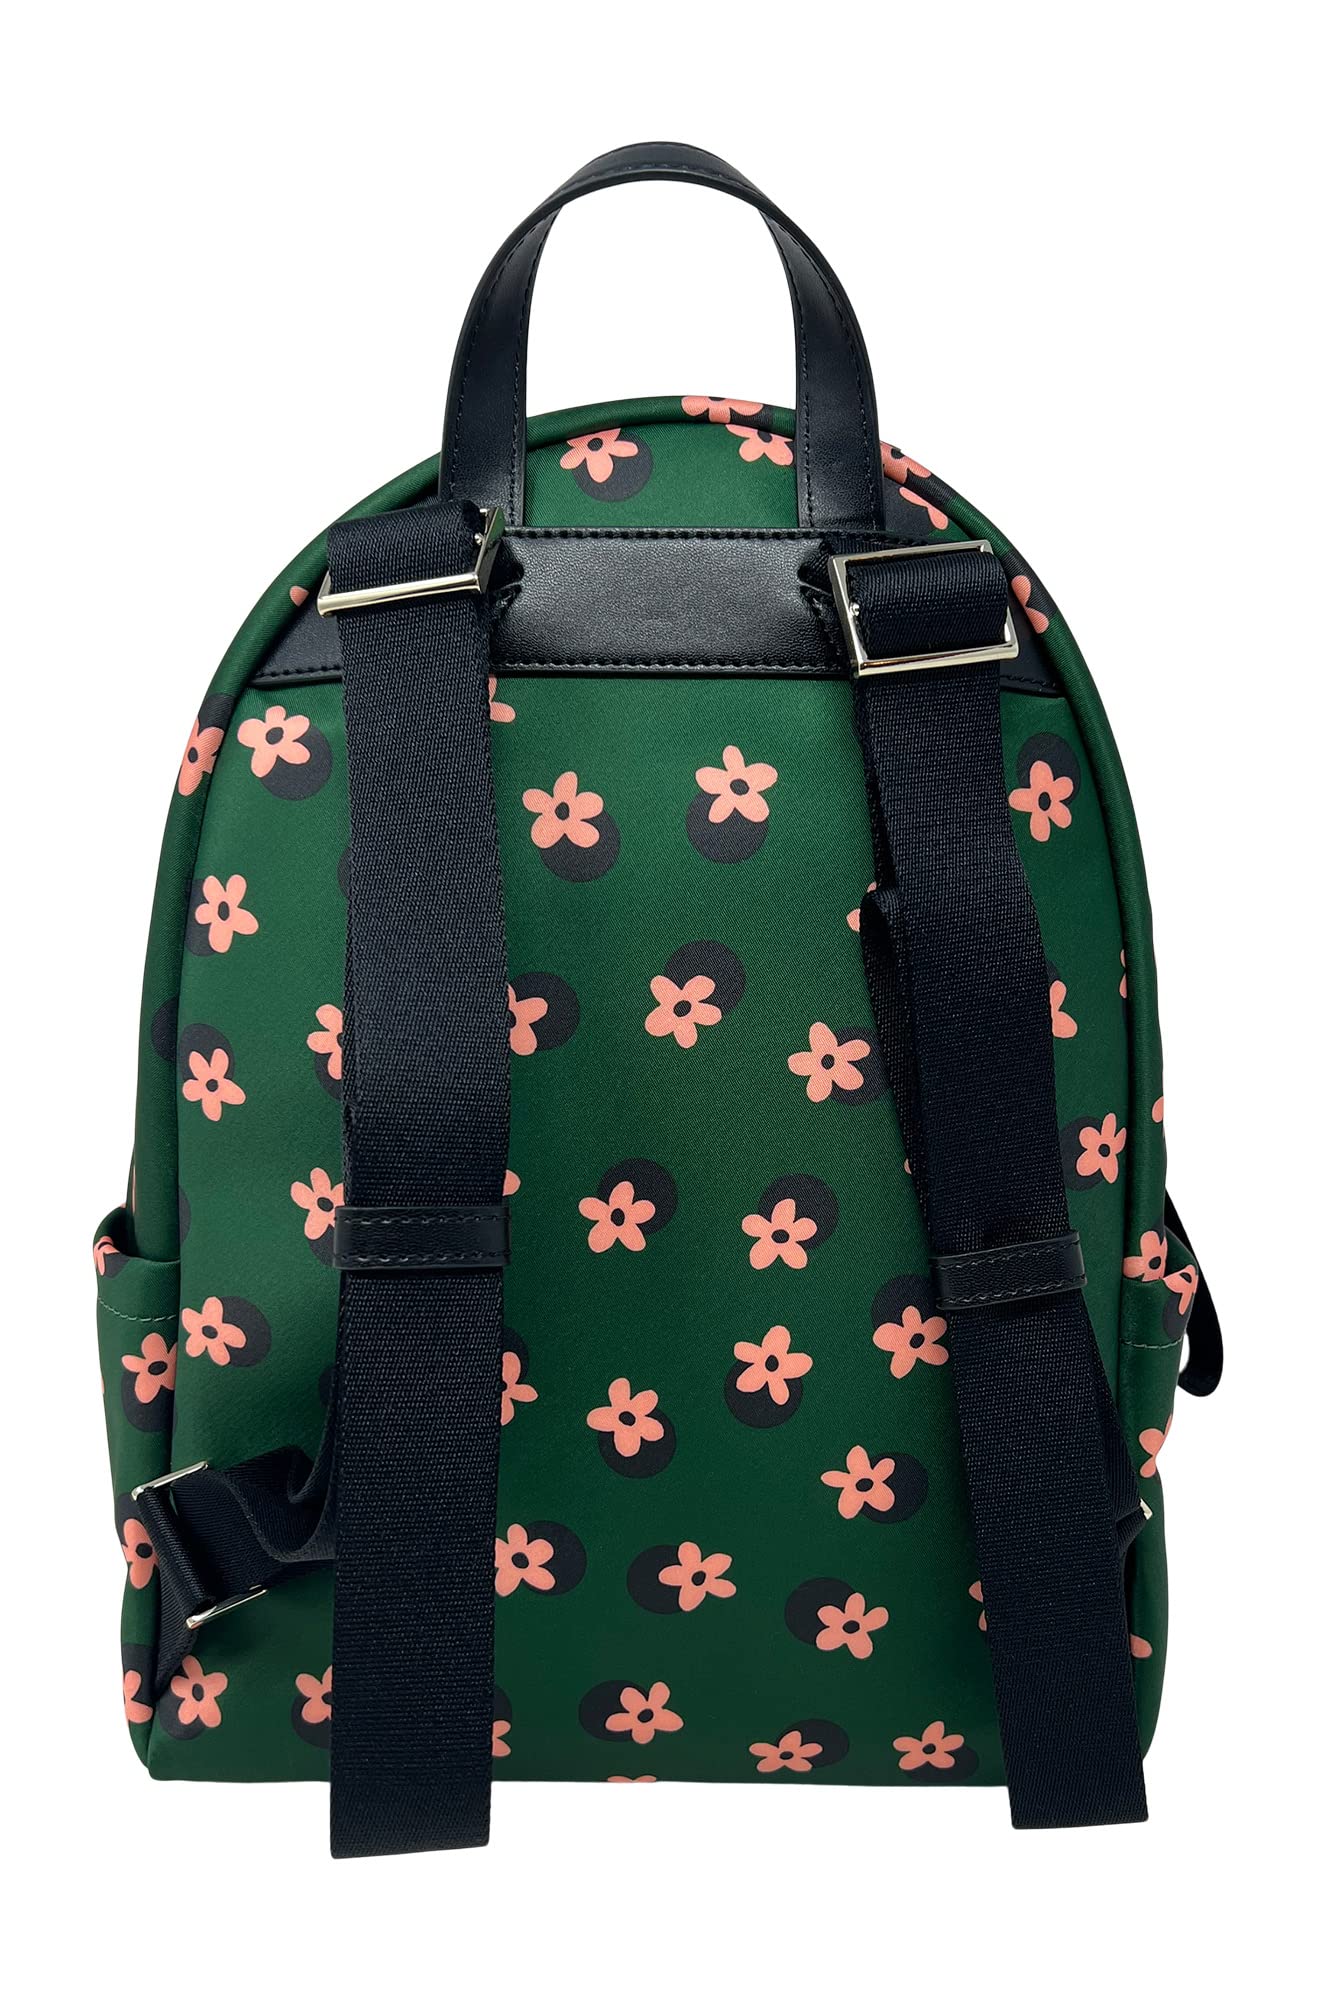 Kate Spade New York Chelsea Medium Nylon Backpack